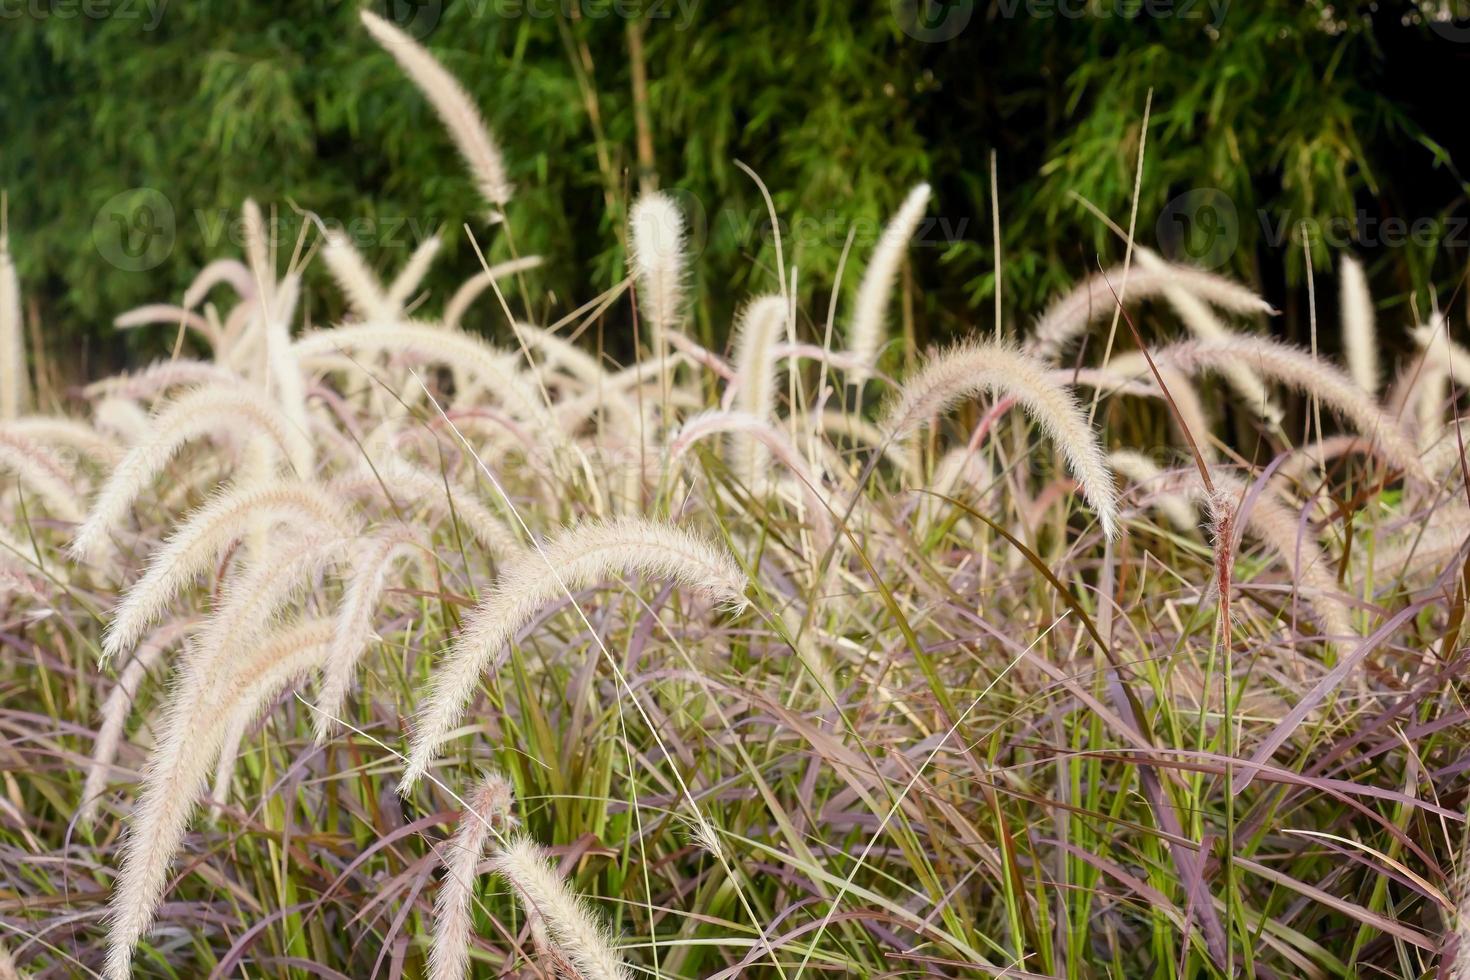 pluma como fuente hierba plantas únicas foto